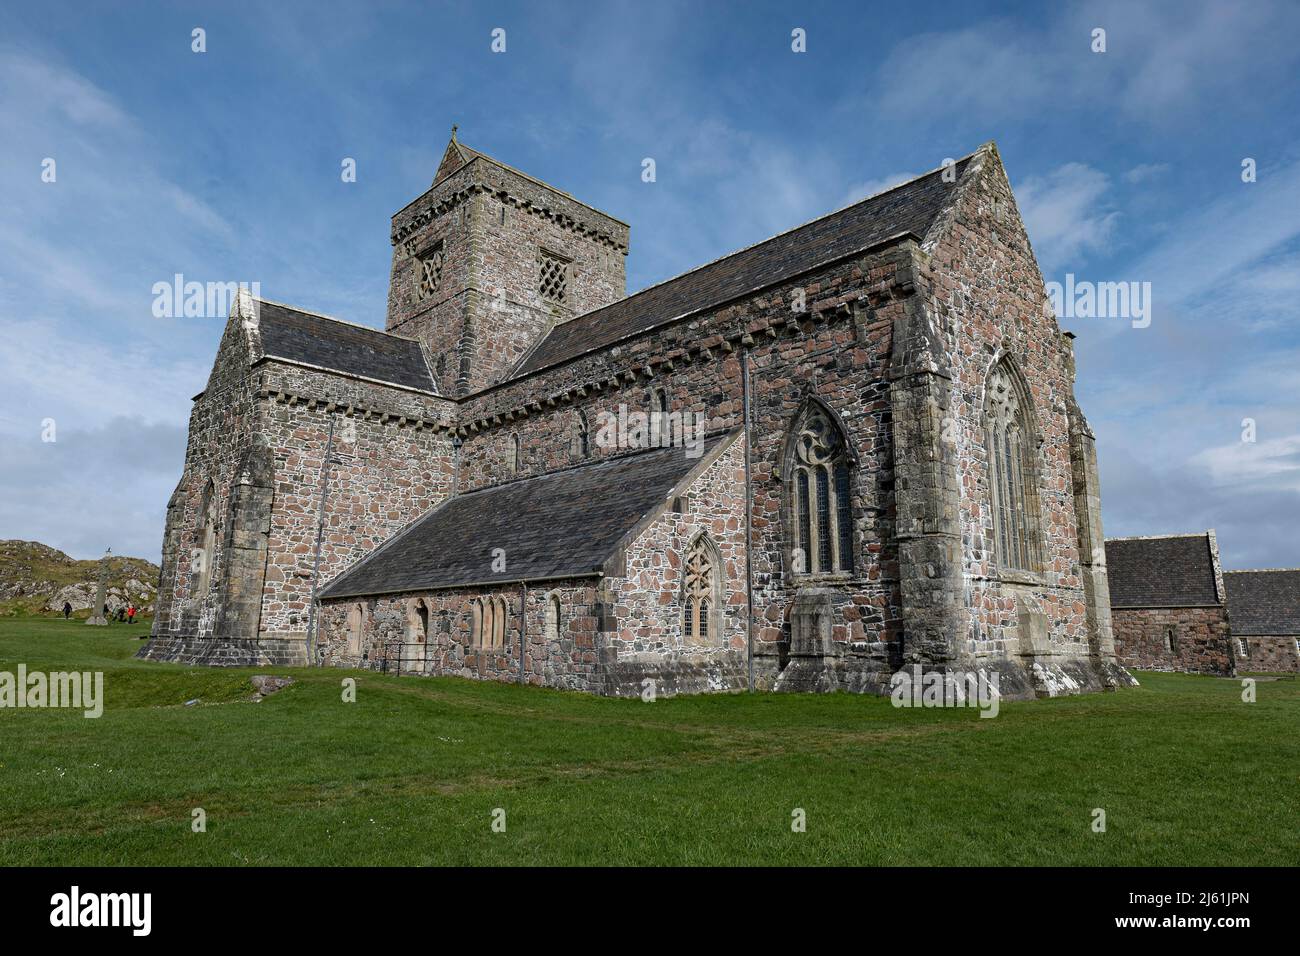 L'imponente abbazia di Iona. Fondata originariamente da St Columba nel 563, Iona è considerata il luogo di nascita del cristianesimo in Scozia Foto Stock